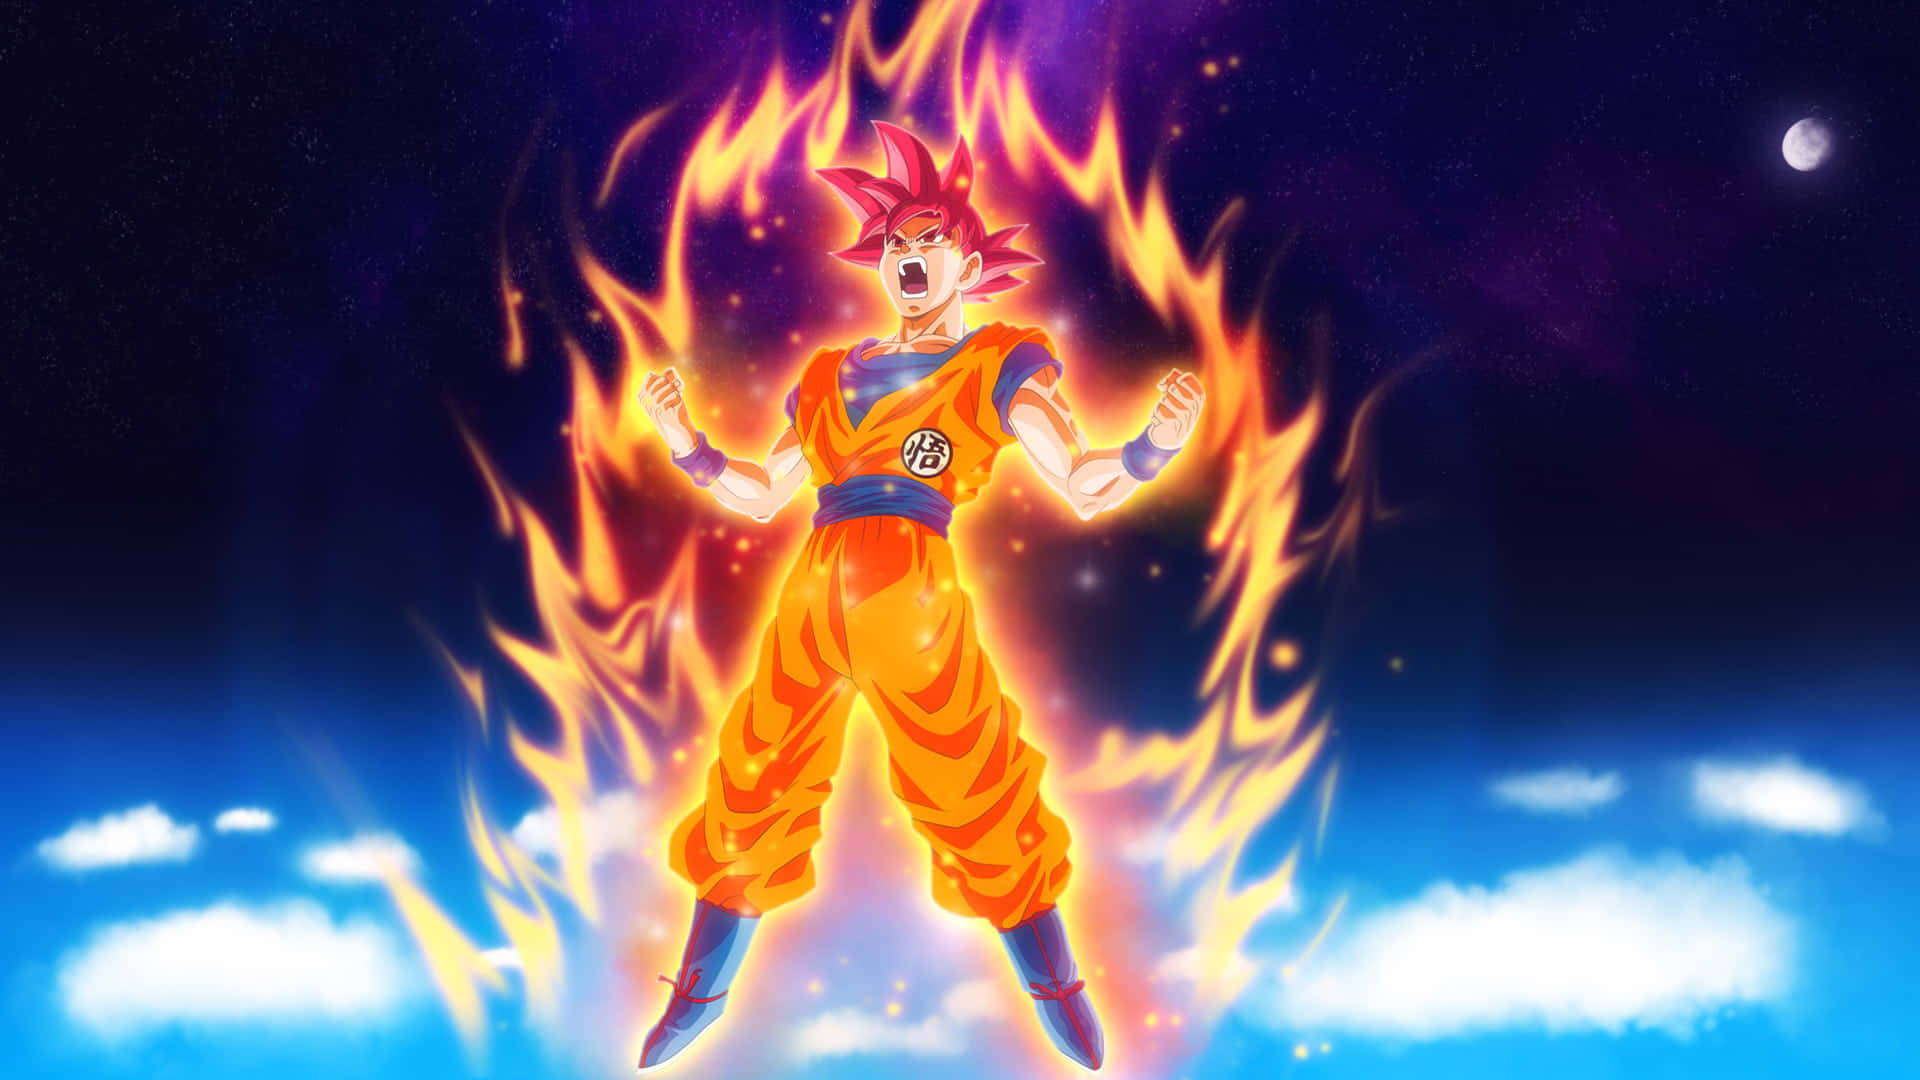 Super Saiyan Goku in awe of his powers